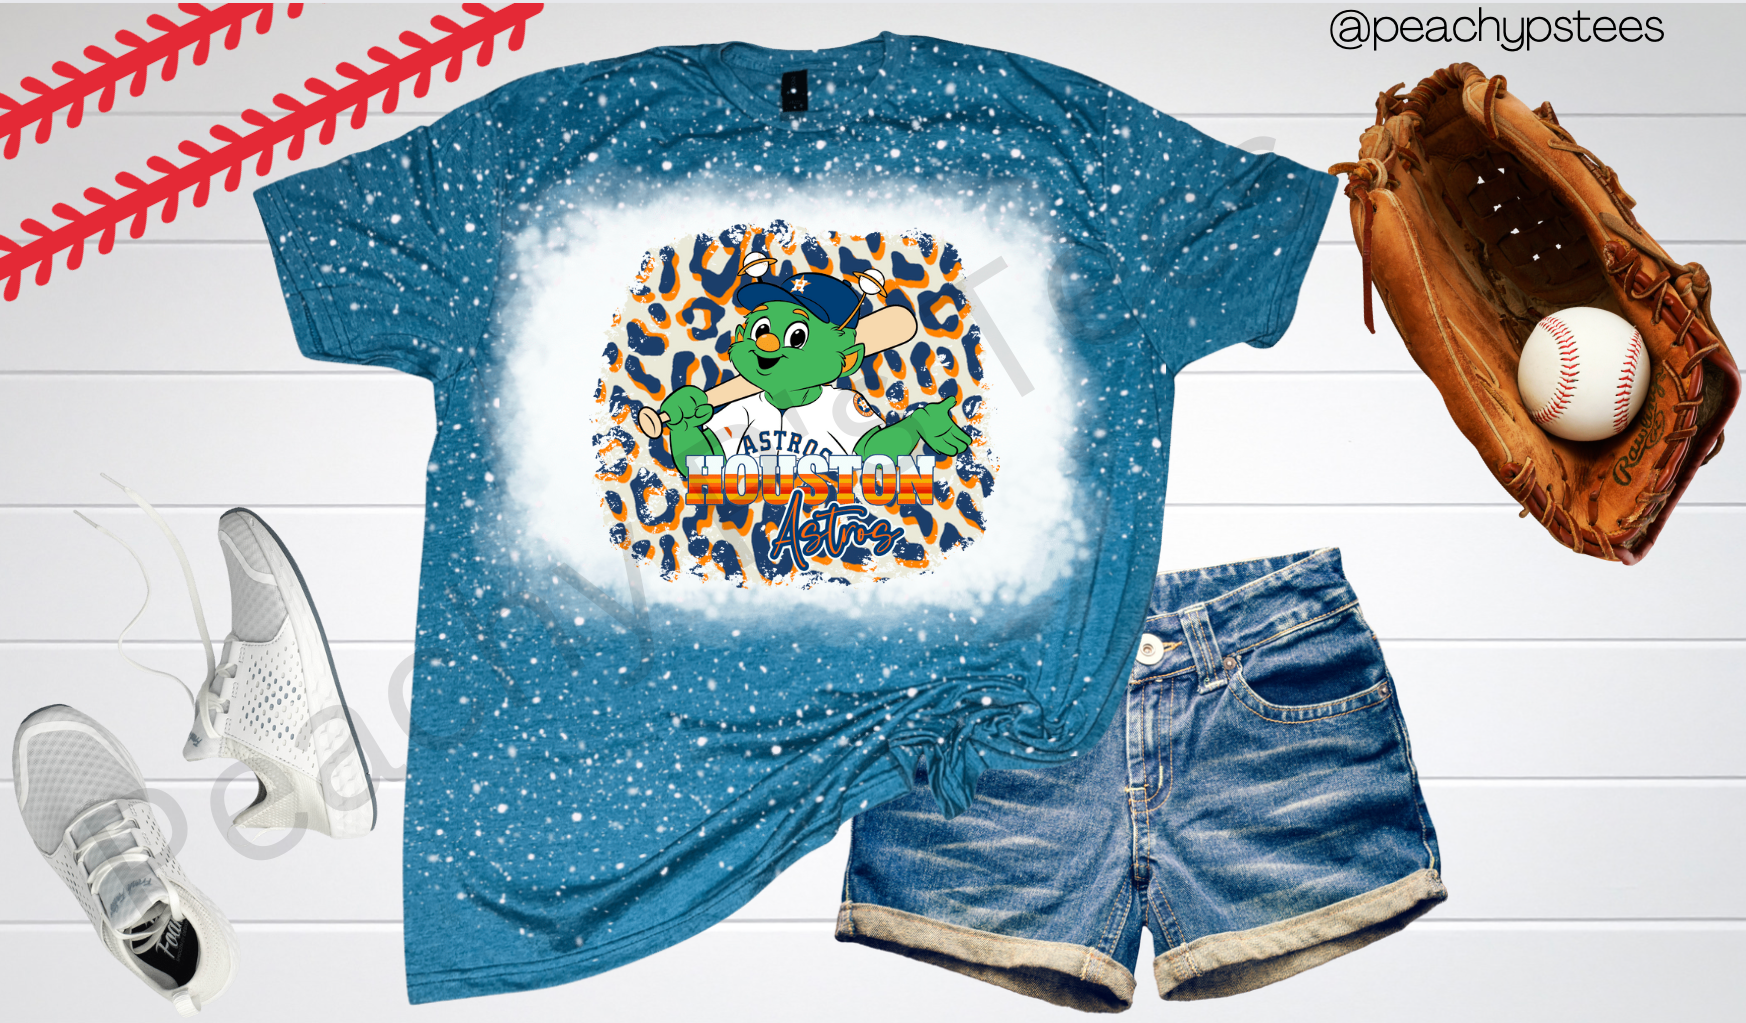 Astros Bleach Shirt 